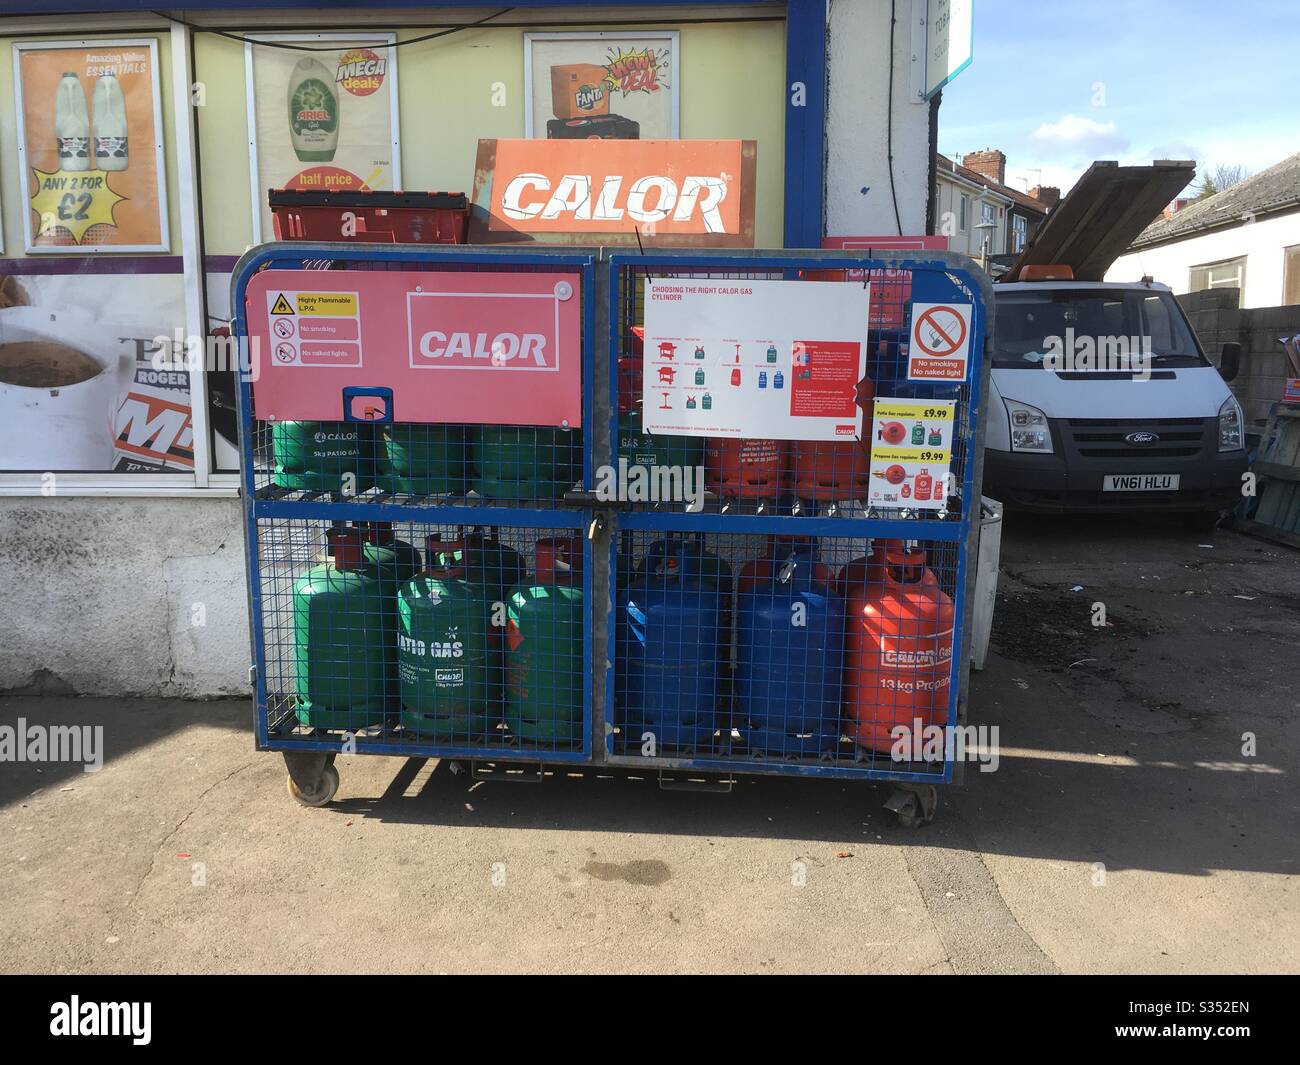 Gasflaschen von Calor auf einem Rack außerhalb eines Shops in Bristol, Großbritannien Stockfoto